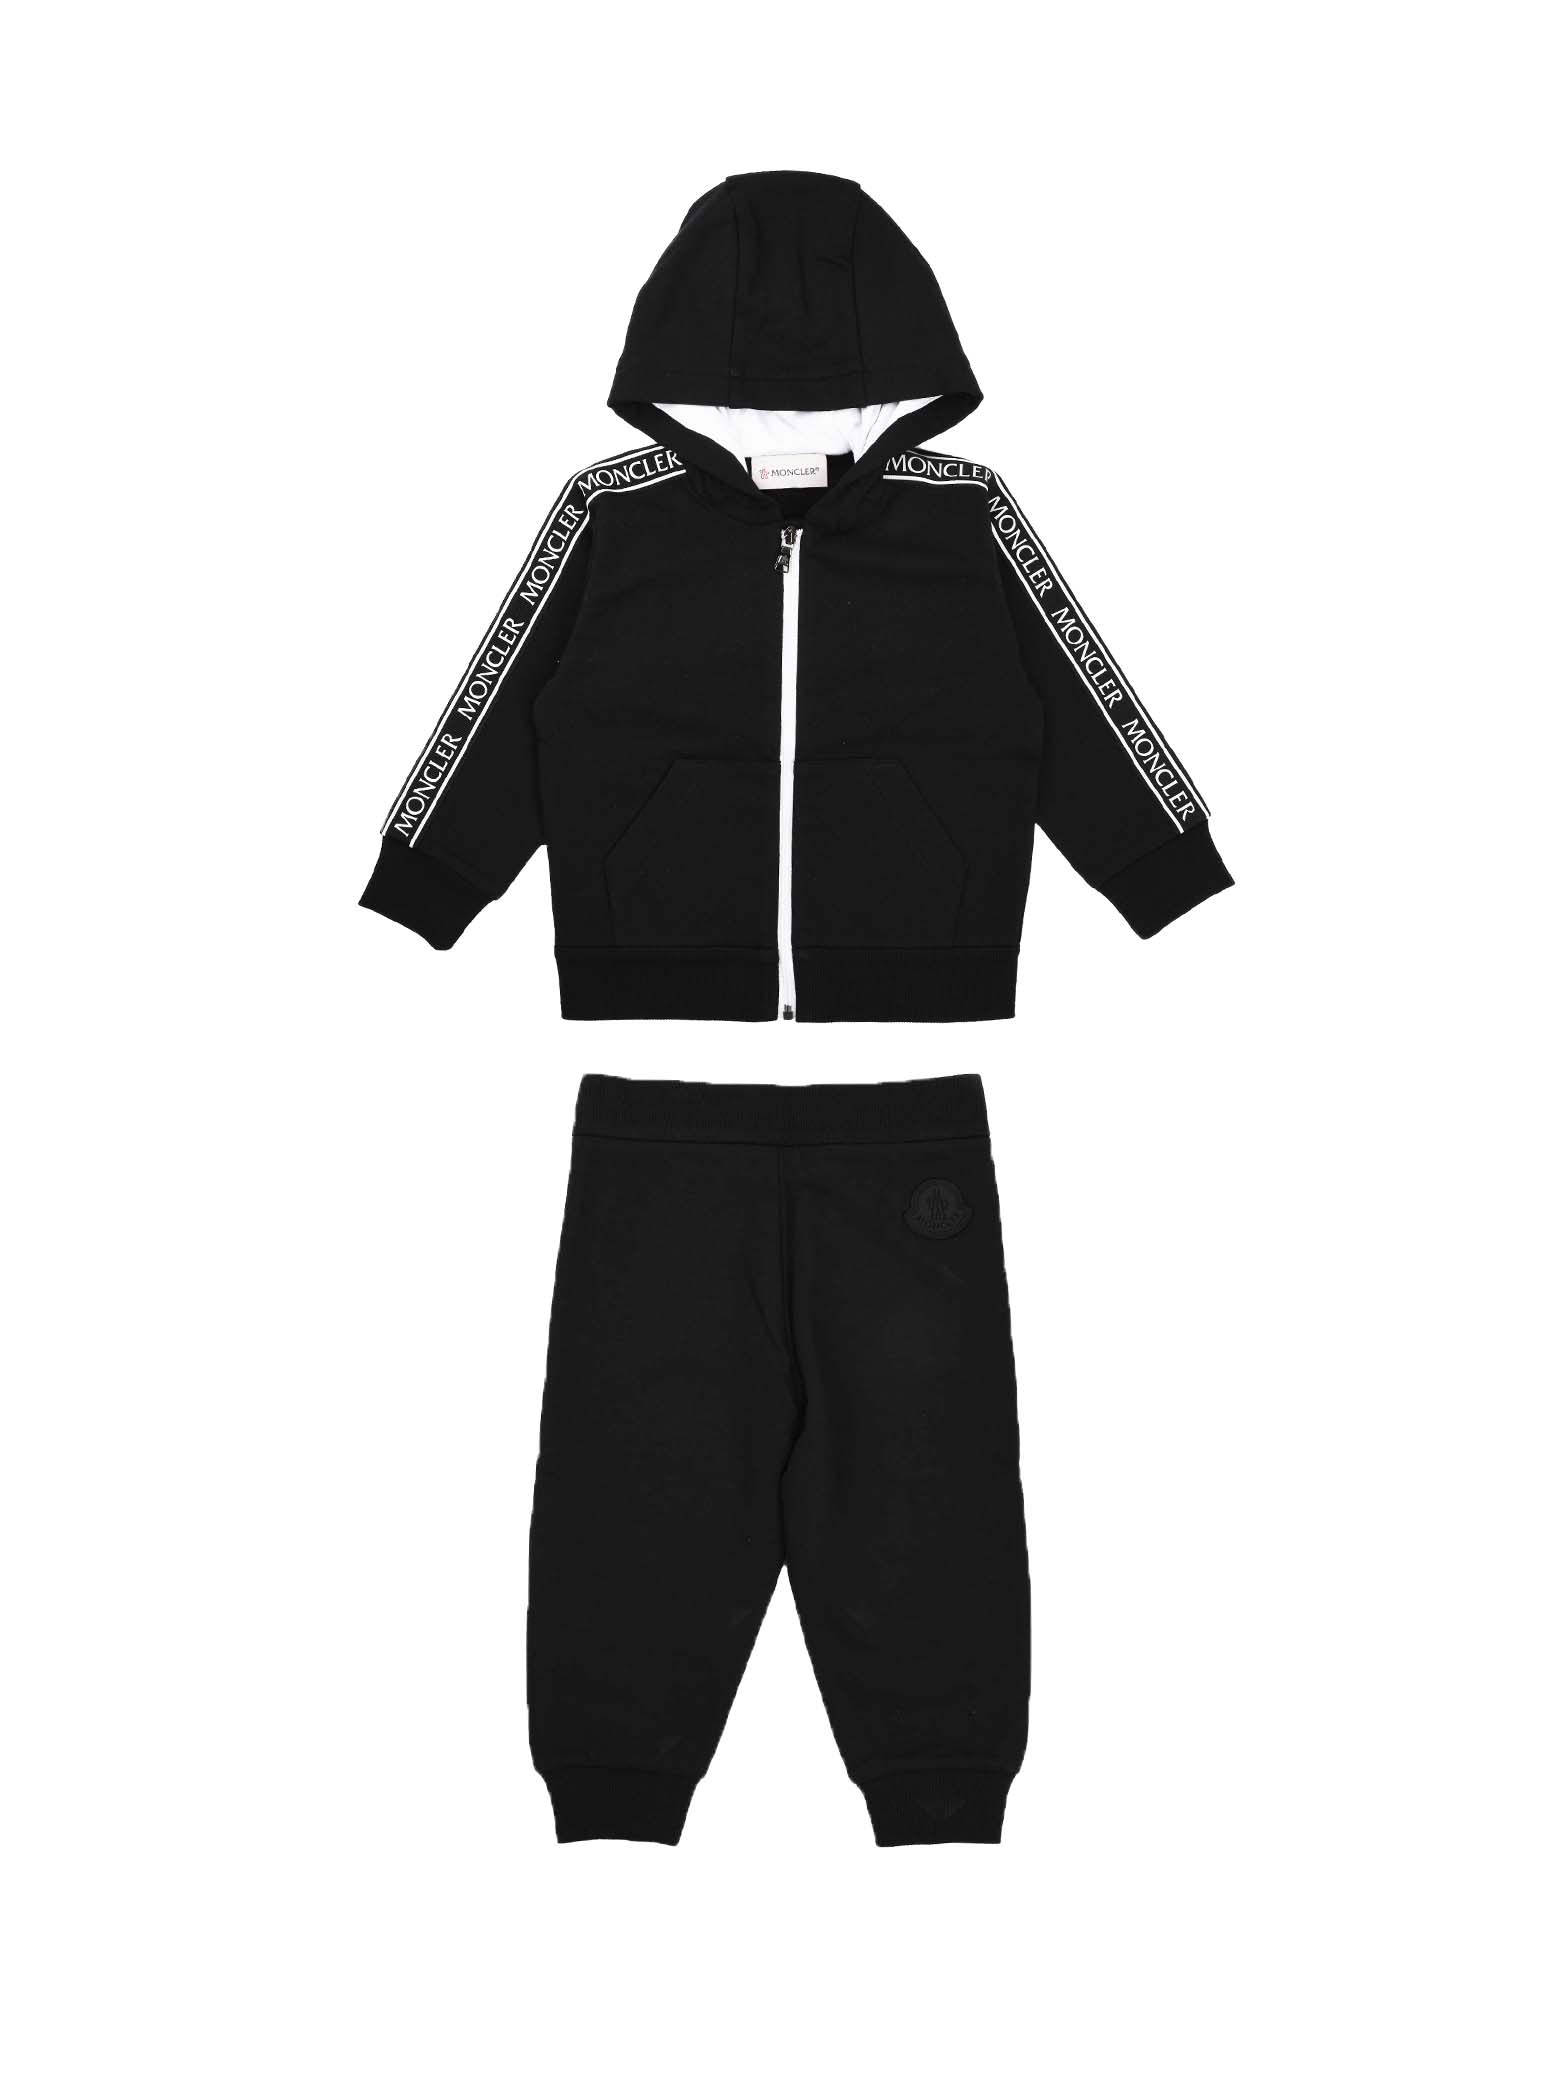 Moncler Complete Black Suit With Zip Sweatshirt